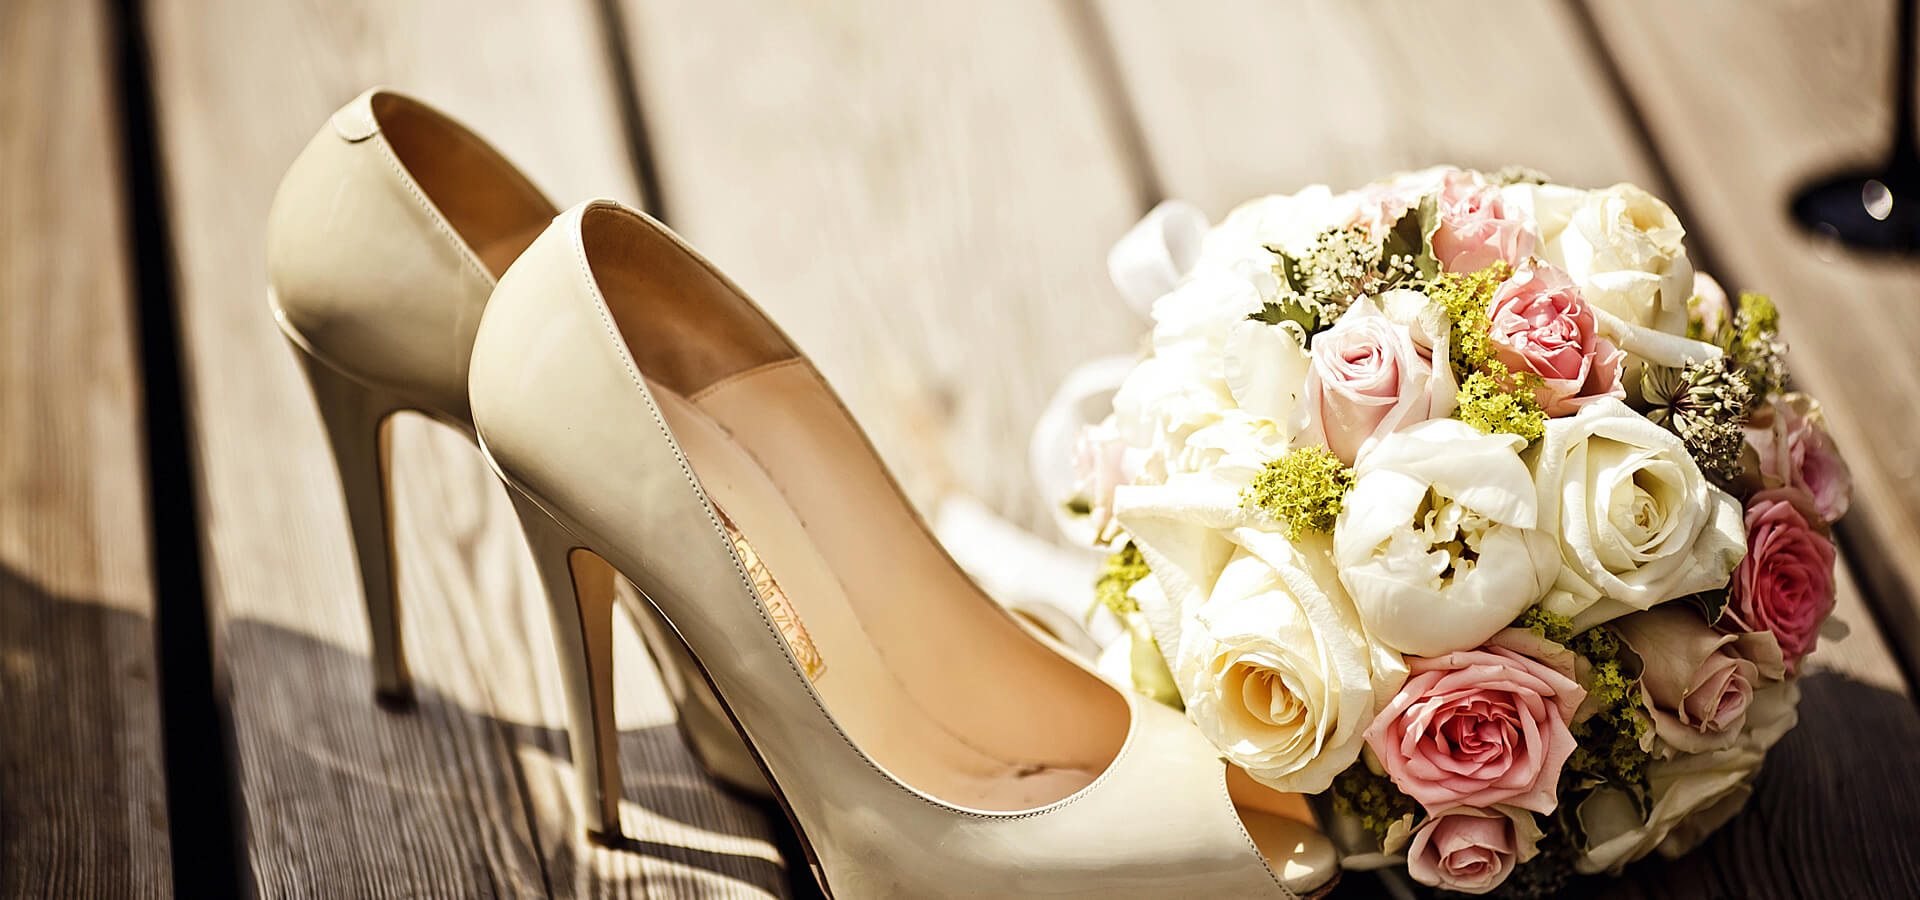 Свадьба в бежевом цвете – аристократичность и элегантность